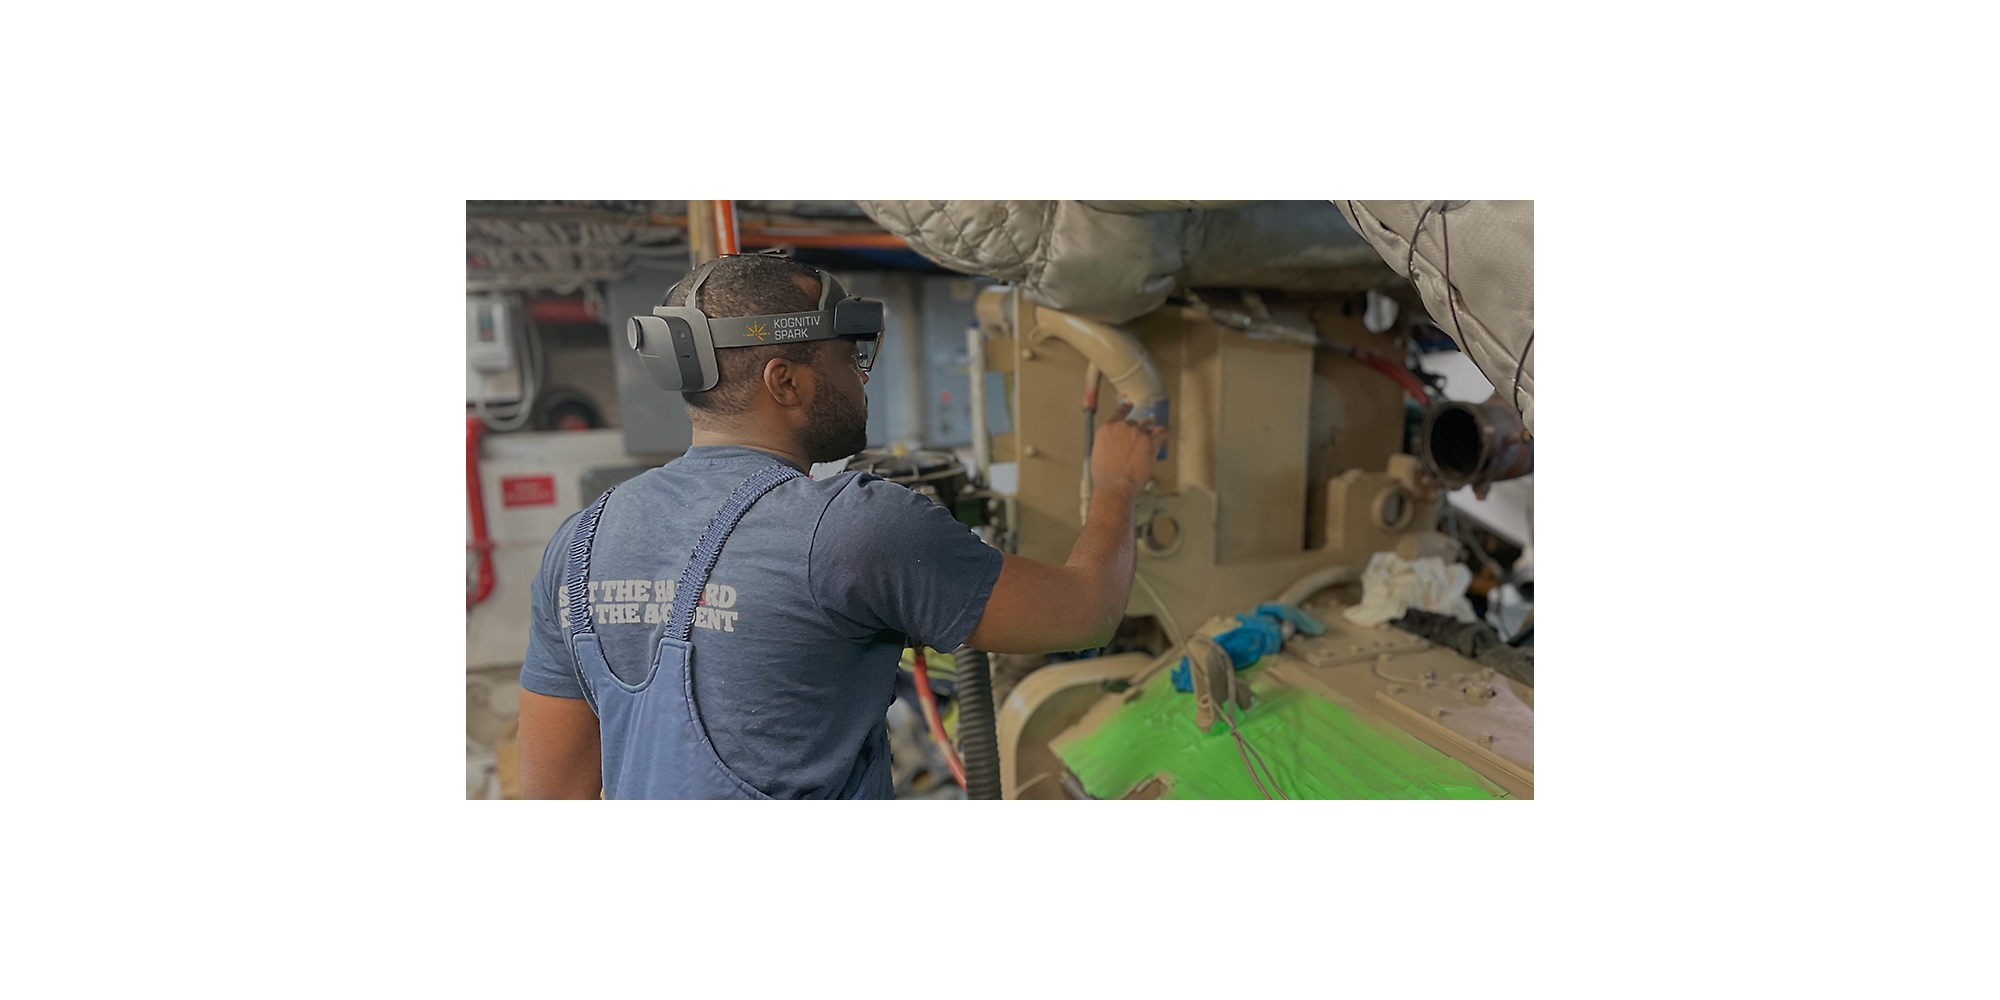 HoloLens 2 takarak büyük bir makine parçası üzerinde çalışan bir kişi.